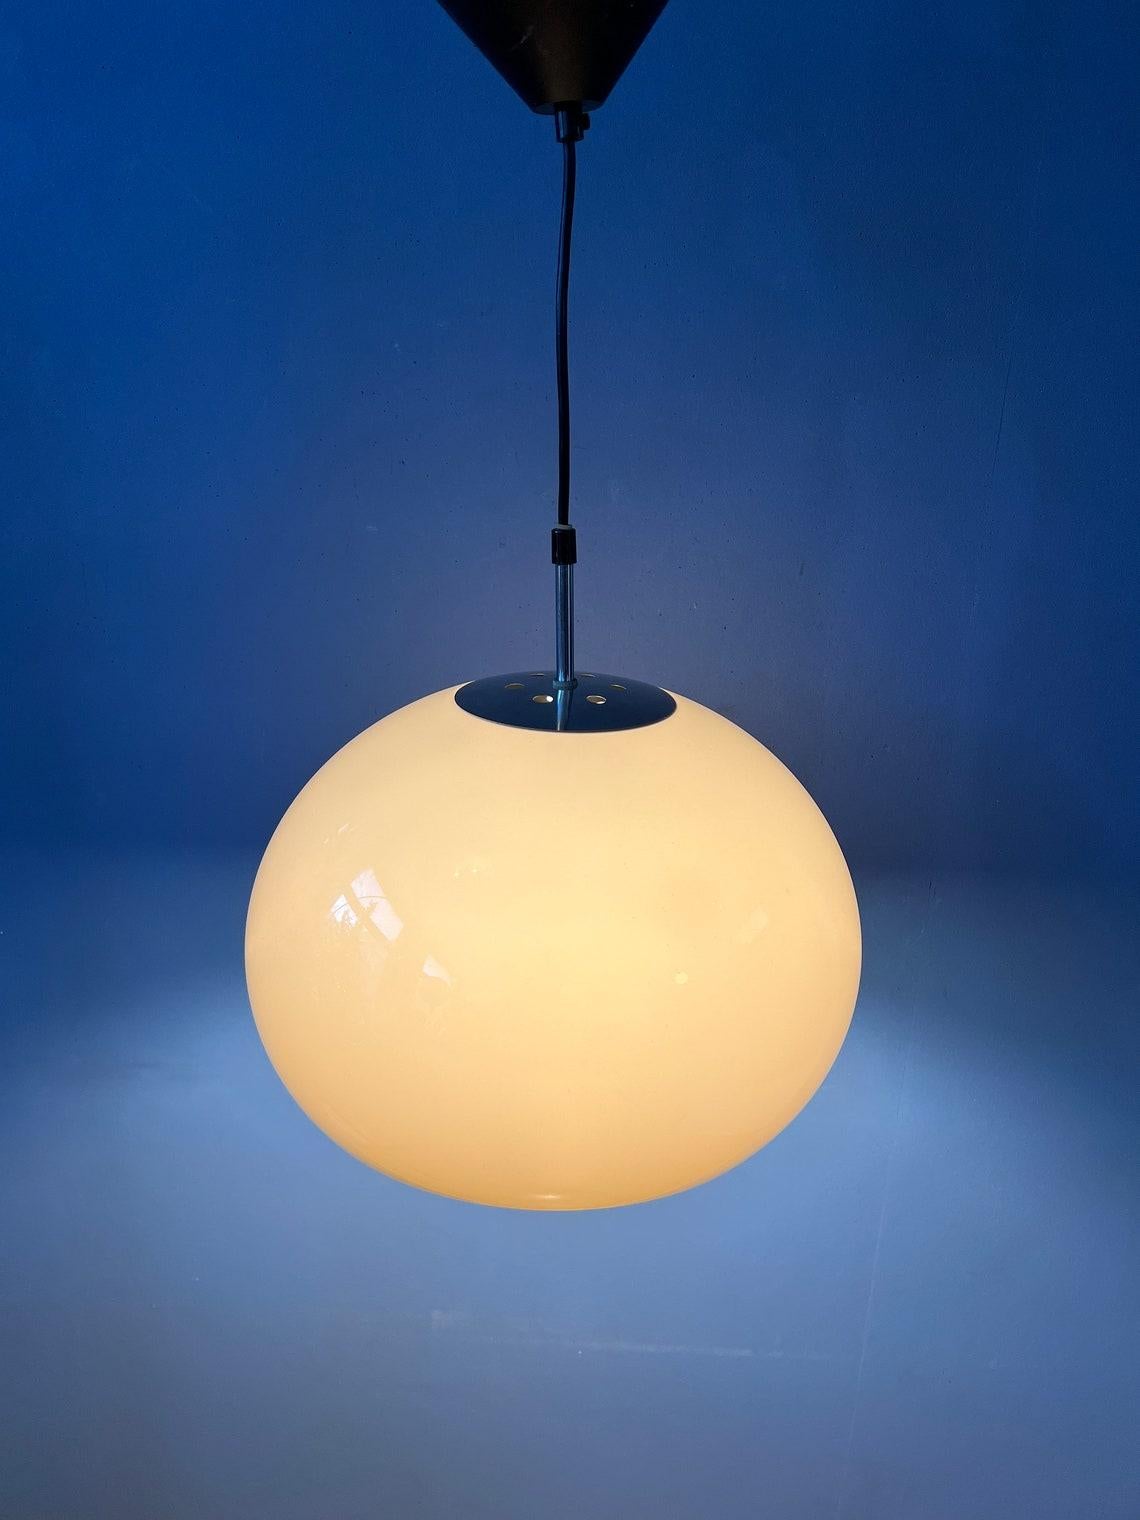 Lampe suspendue Space and Chrome de Dijkstra, de couleur beige/mocca, avec cache supérieur chromé. L'abat-jour en verre acrylique produit une lumière magnifique. Les lampes nécessitent une ampoule E27/26 (standard).

Informations complémentaires